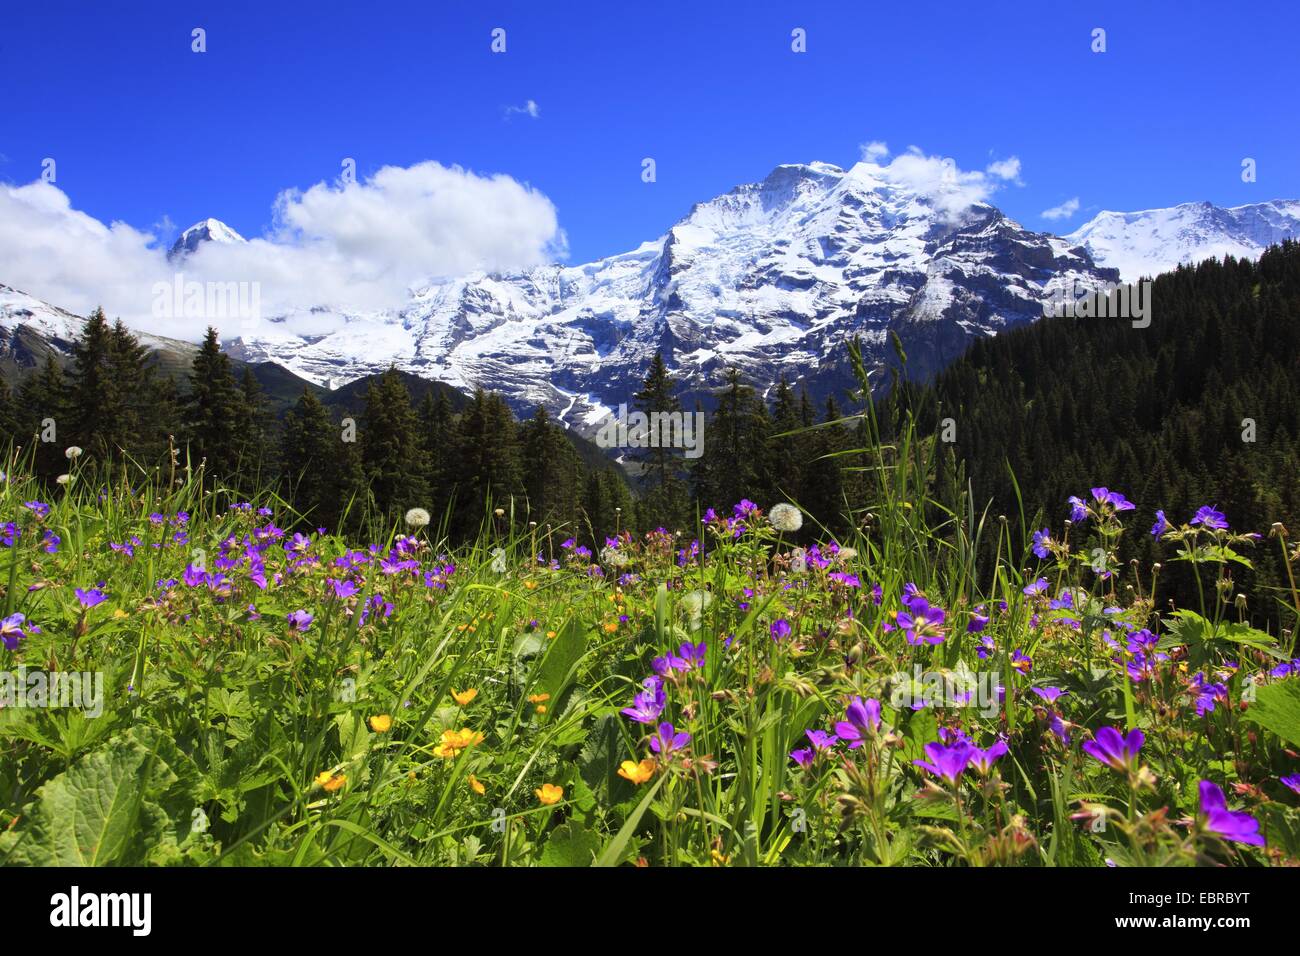 Vue depuis un pâturage à une montagne, avec l'Eiger (3970 m), Moench (4107 m) et la Jungfrau (4158 m), Suisse, Berne, Oberland Bernois Banque D'Images